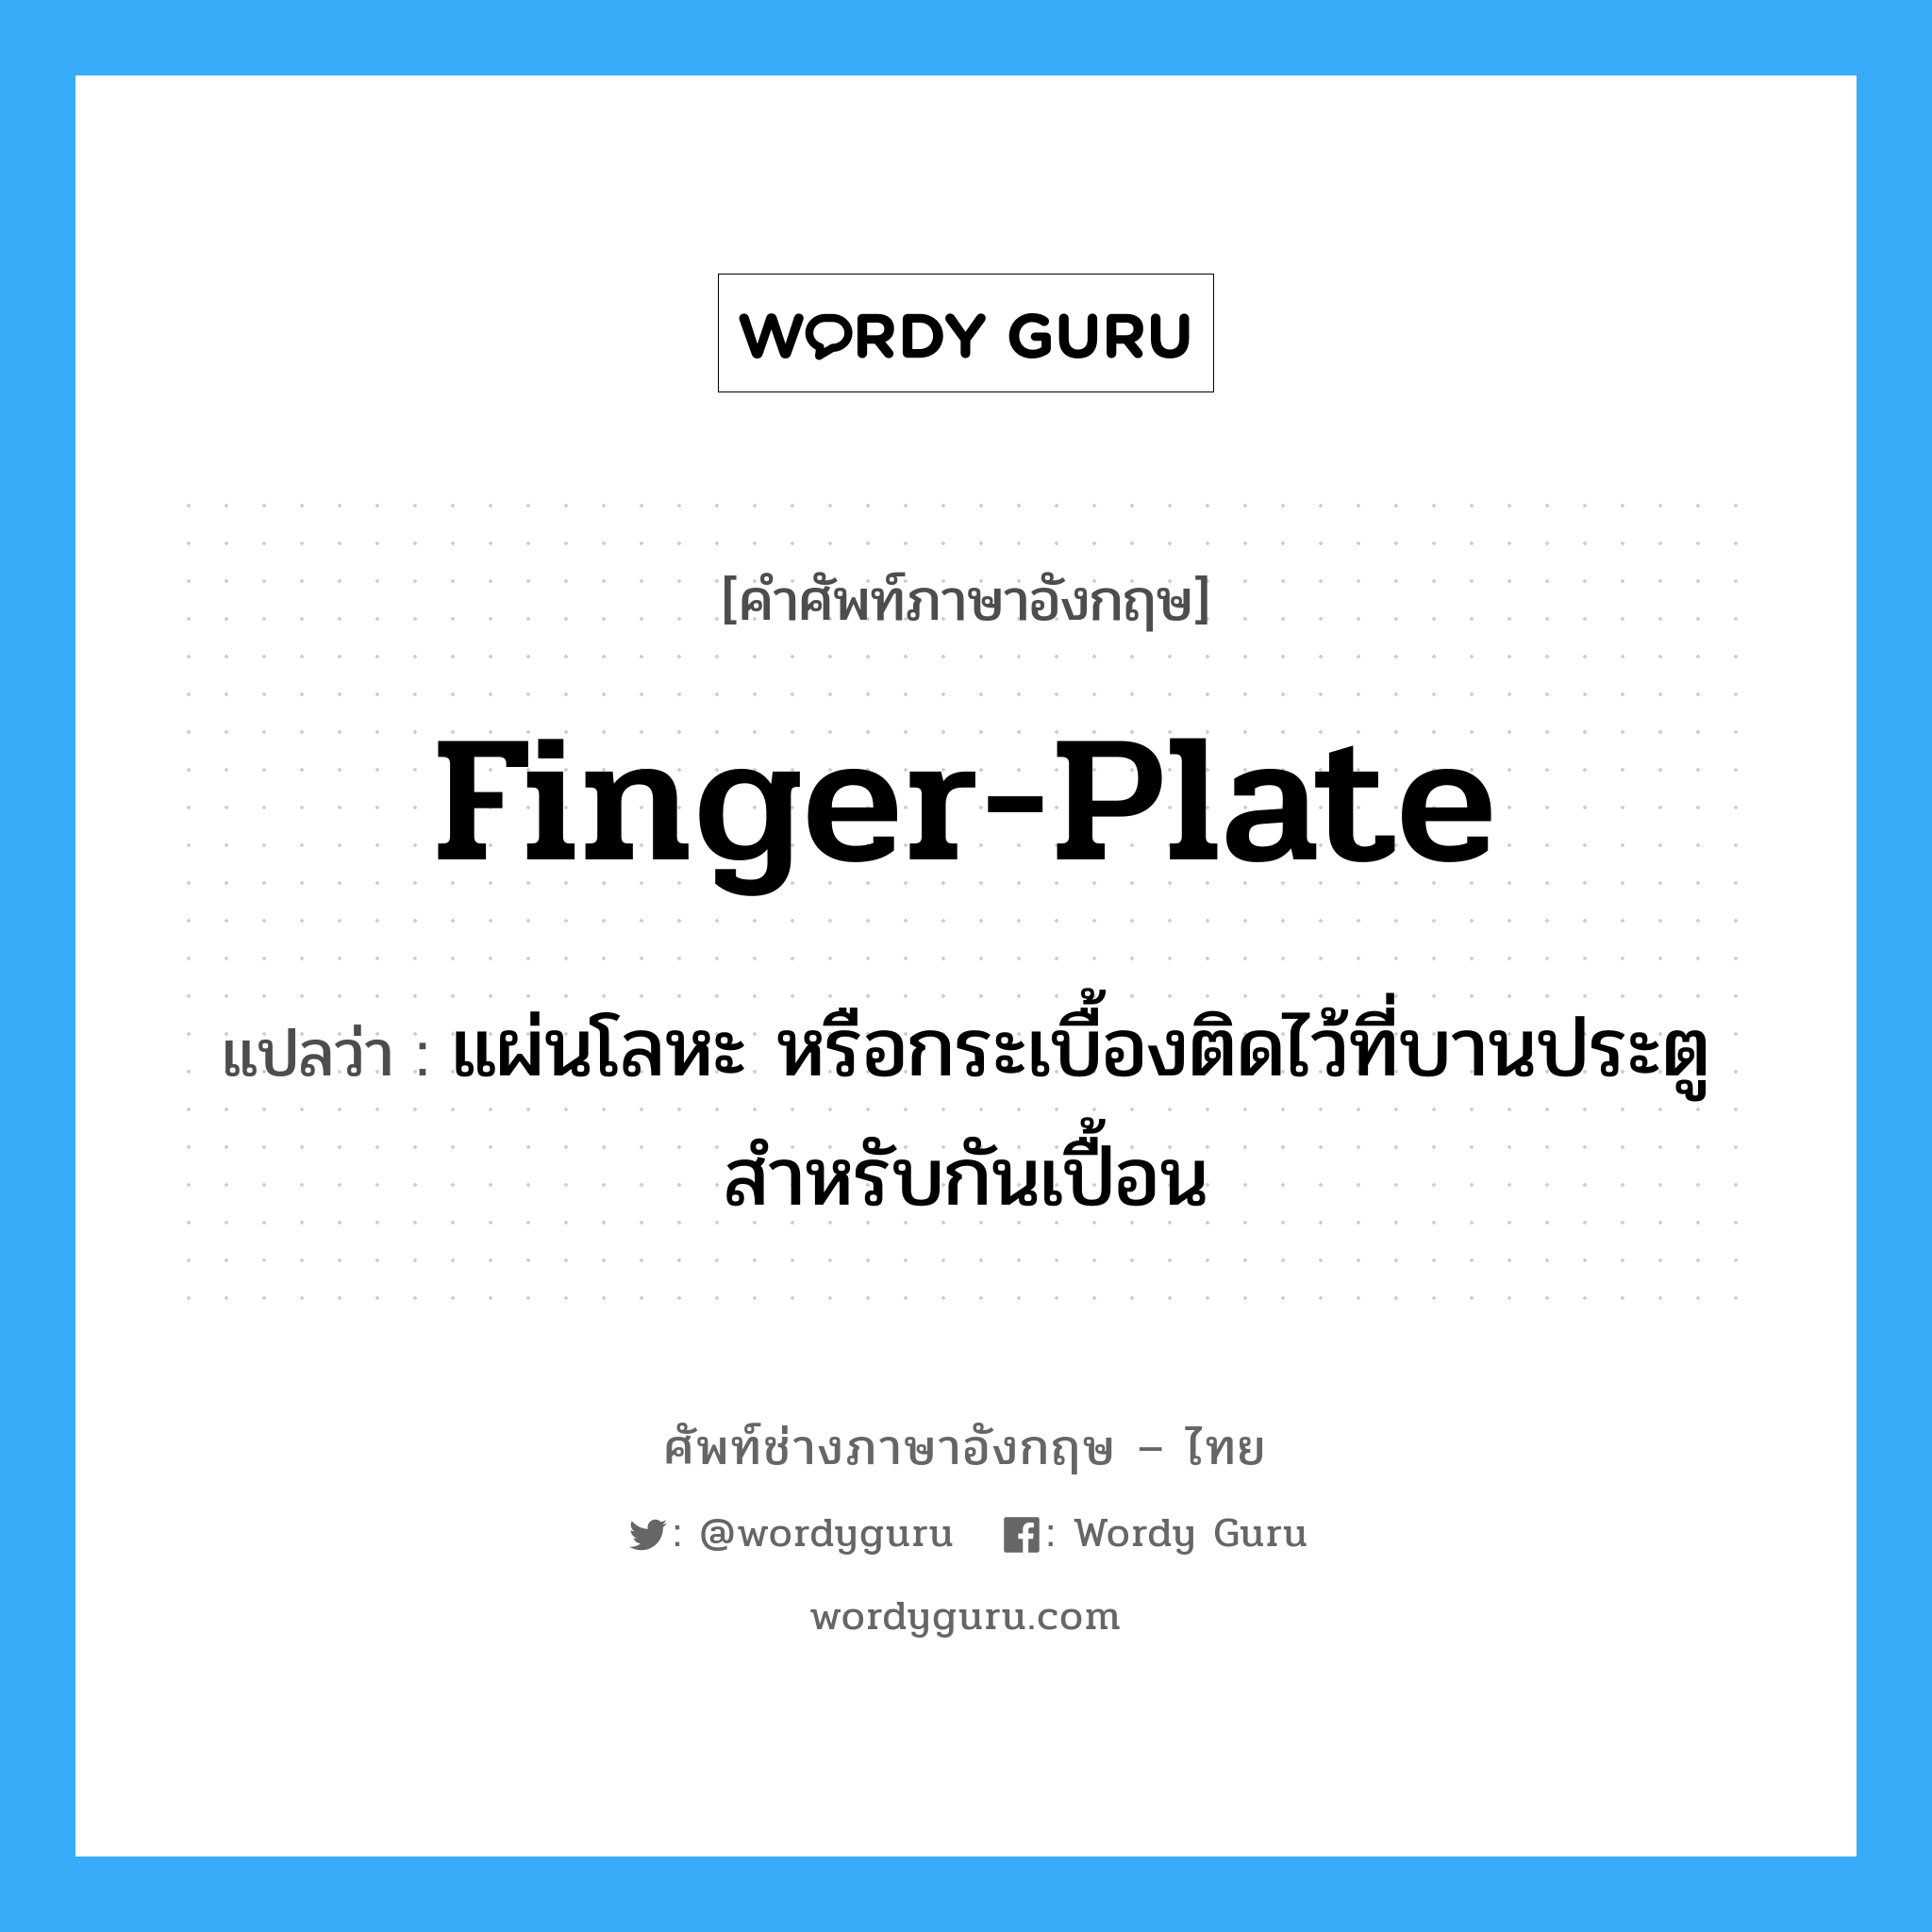 finger plate แปลว่า?, คำศัพท์ช่างภาษาอังกฤษ - ไทย finger-plate คำศัพท์ภาษาอังกฤษ finger-plate แปลว่า แผ่นโลหะ หรือกระเบื้องติดไว้ที่บานประตู สำหรับกันเปื้อน